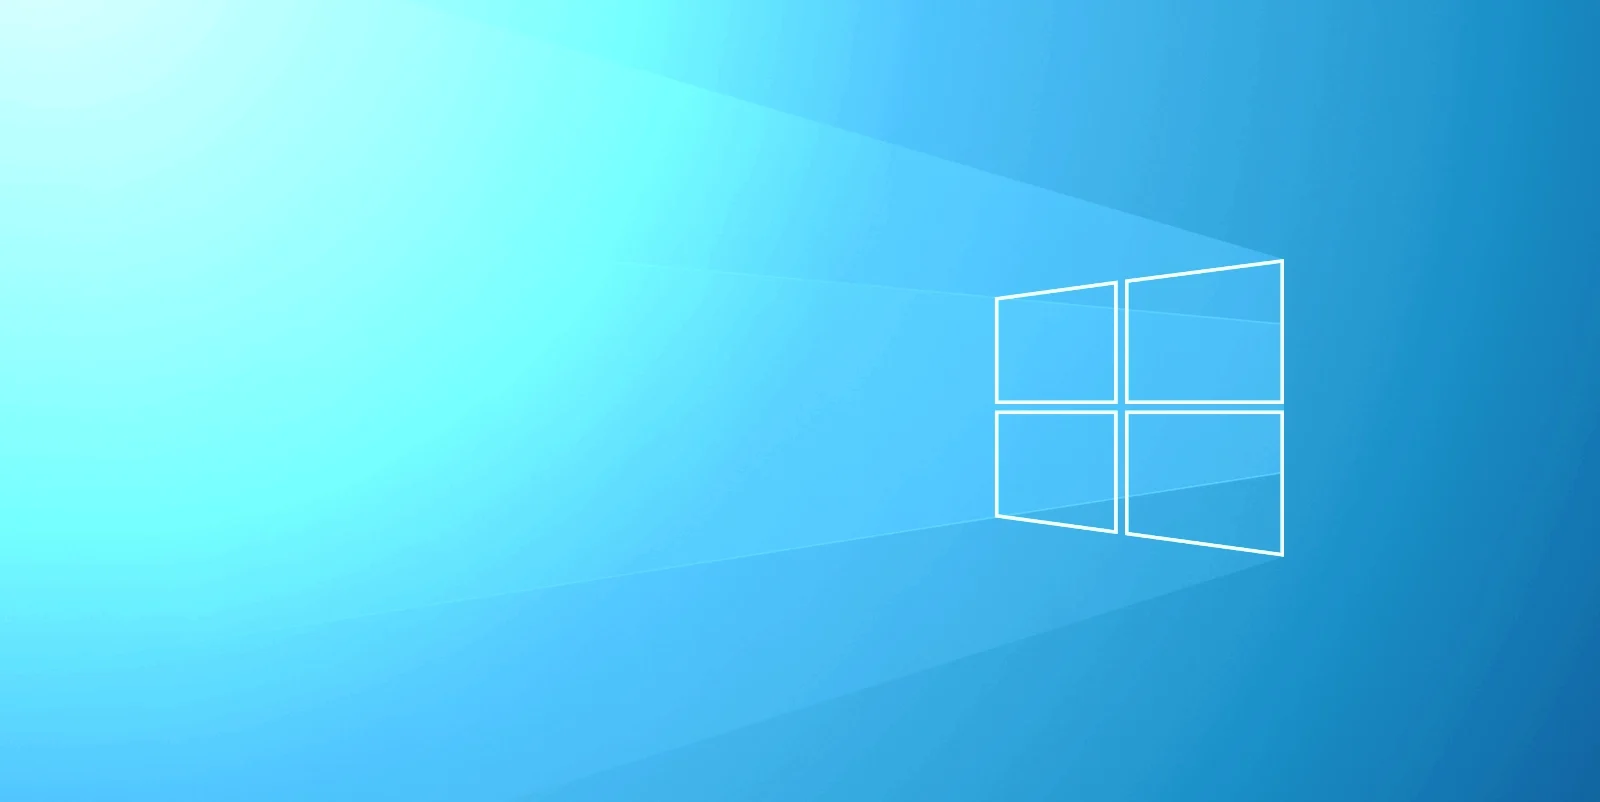 Windows 10 licenses